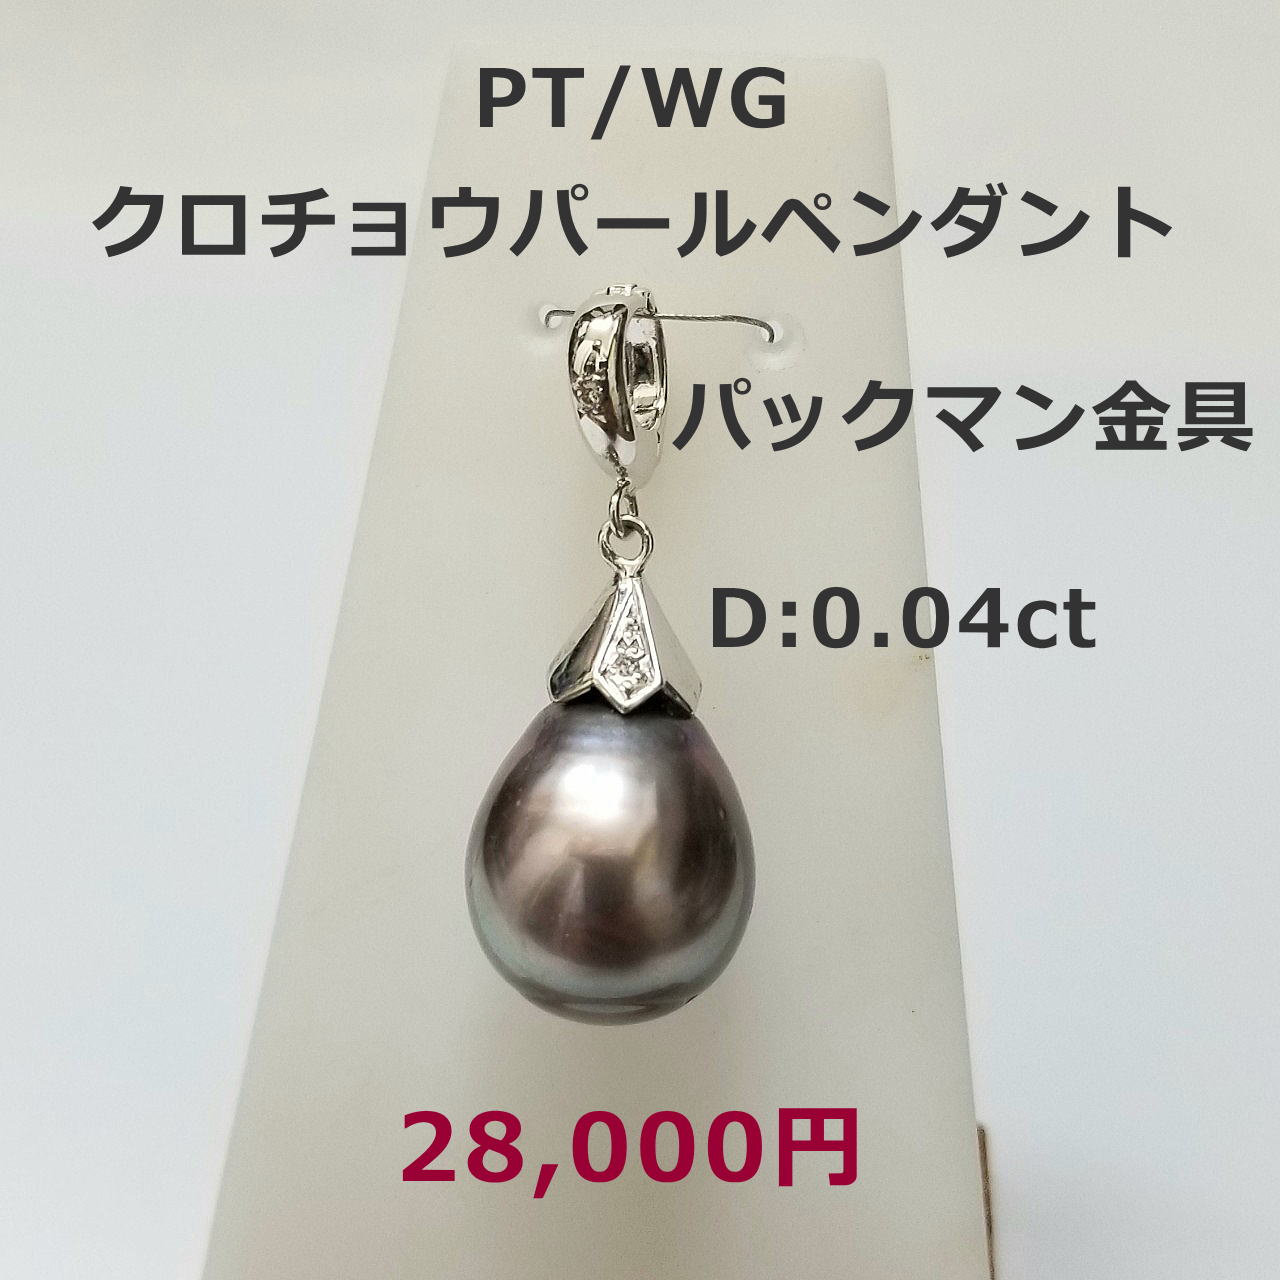 K18WG ブラックダイヤ/ダイヤネックレス　ダイヤトータル1.20ct ネックレス45cmスルー式　138,000円　期間限定セール特価税込。